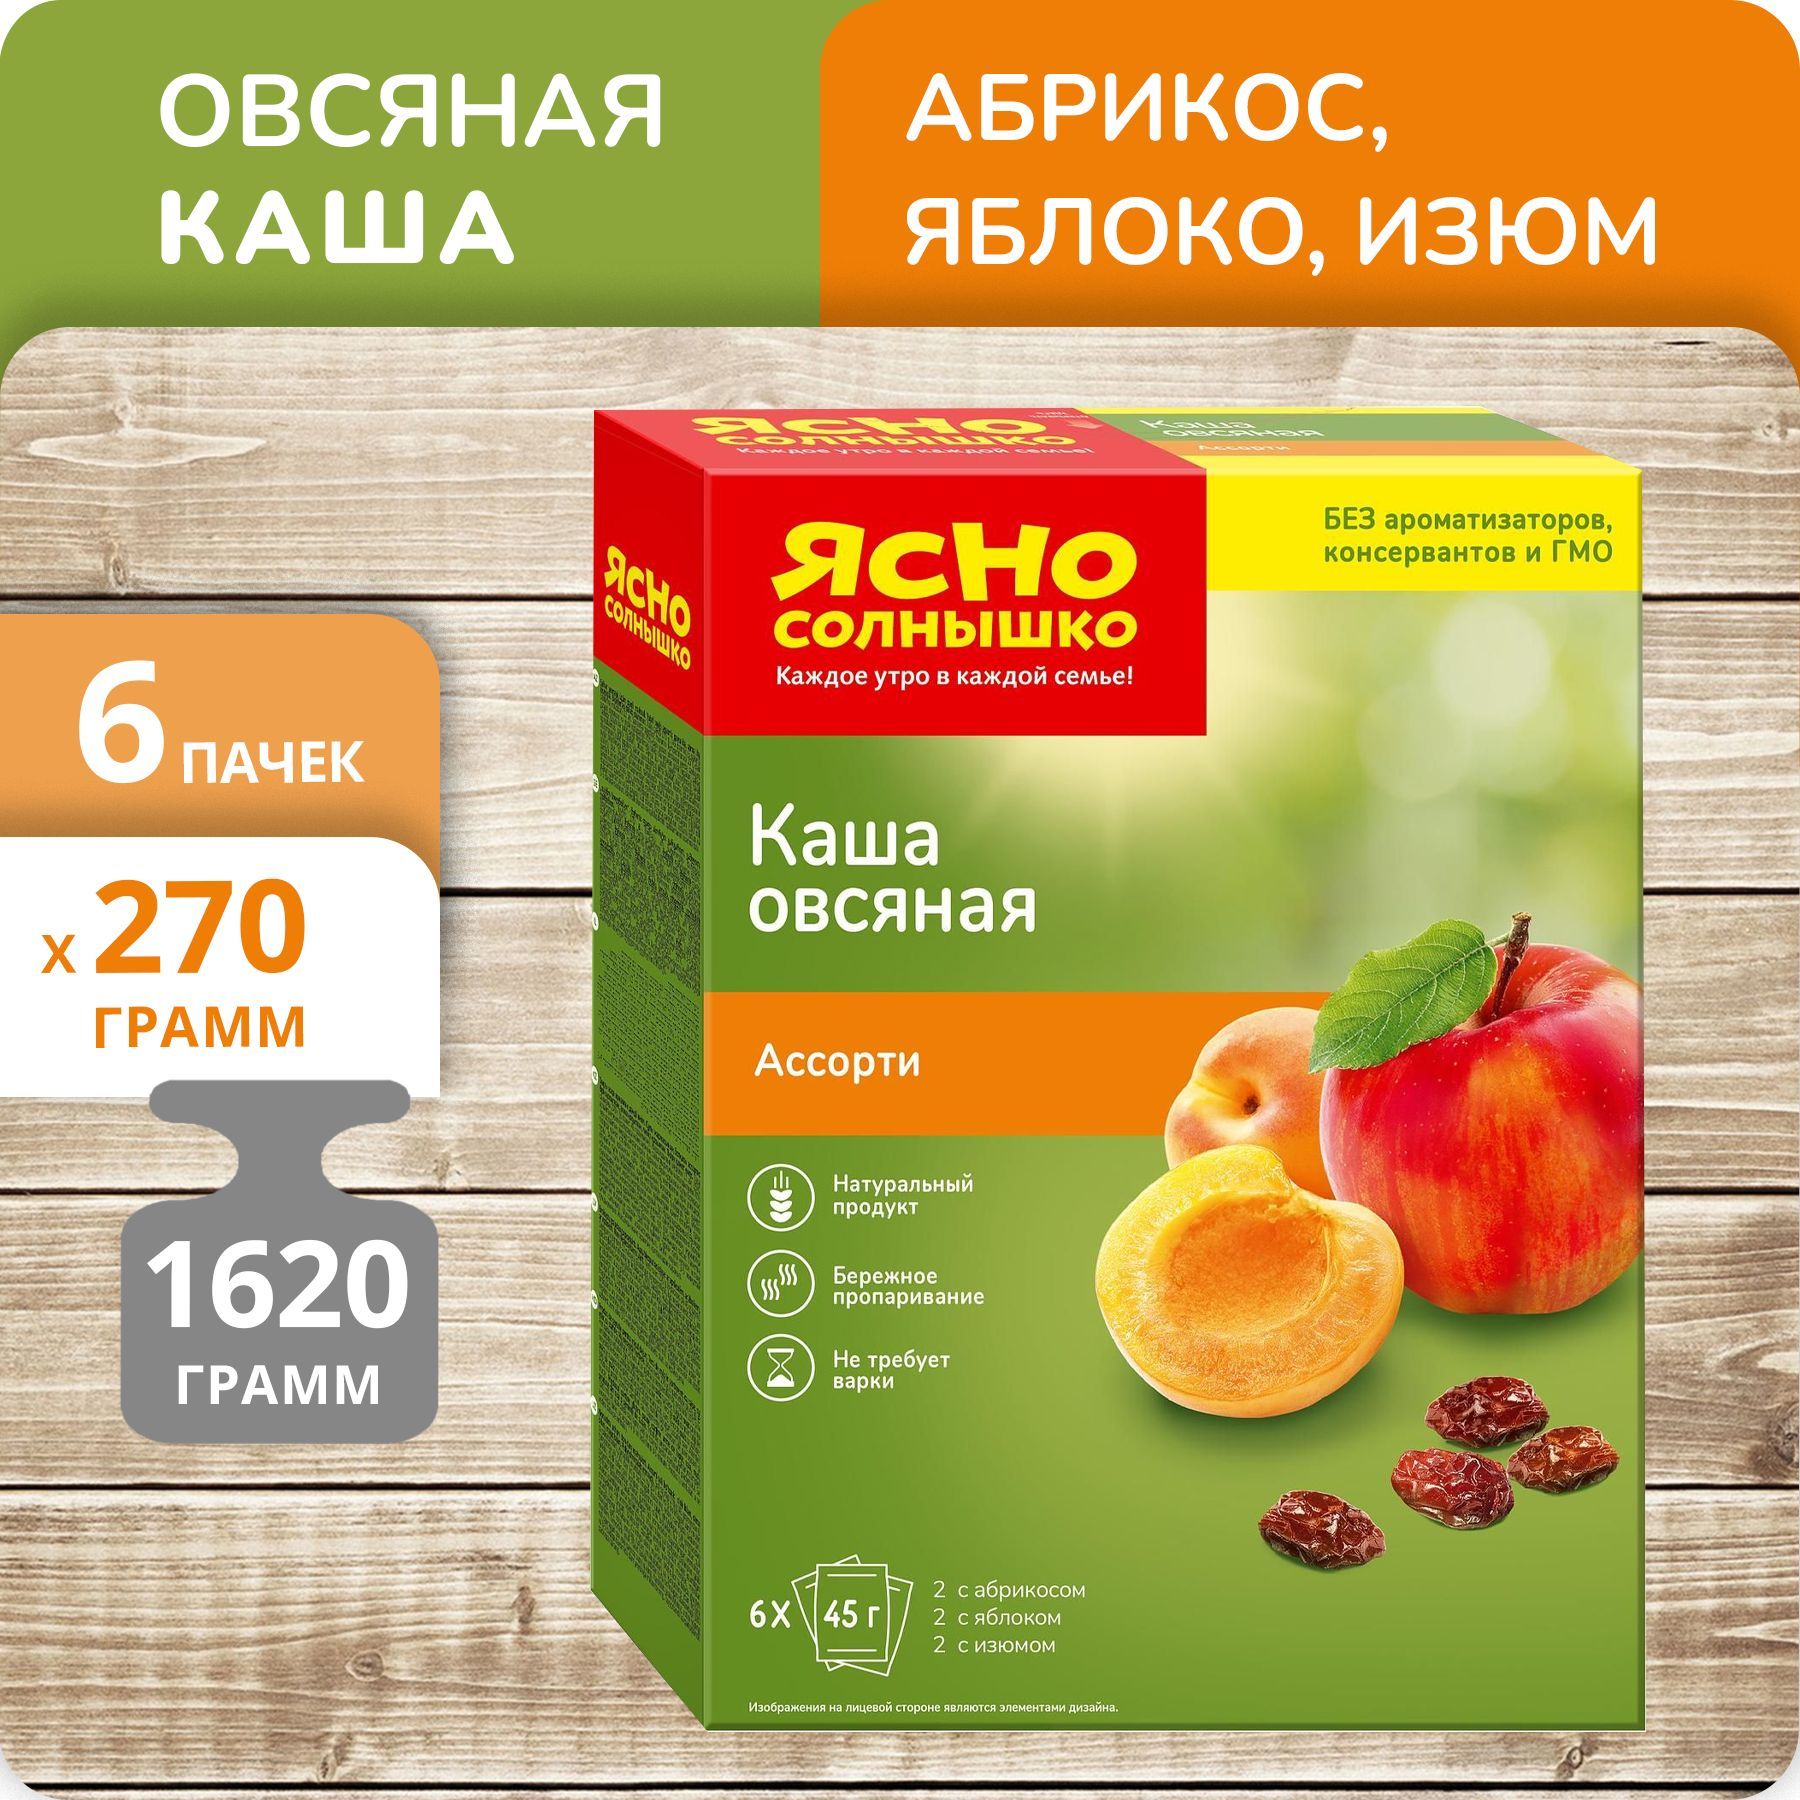 Каша Ясно солнышко овсяная ассорти абрикос, яблоко, изюм, 6 шт х 45 г, 6 упаковок